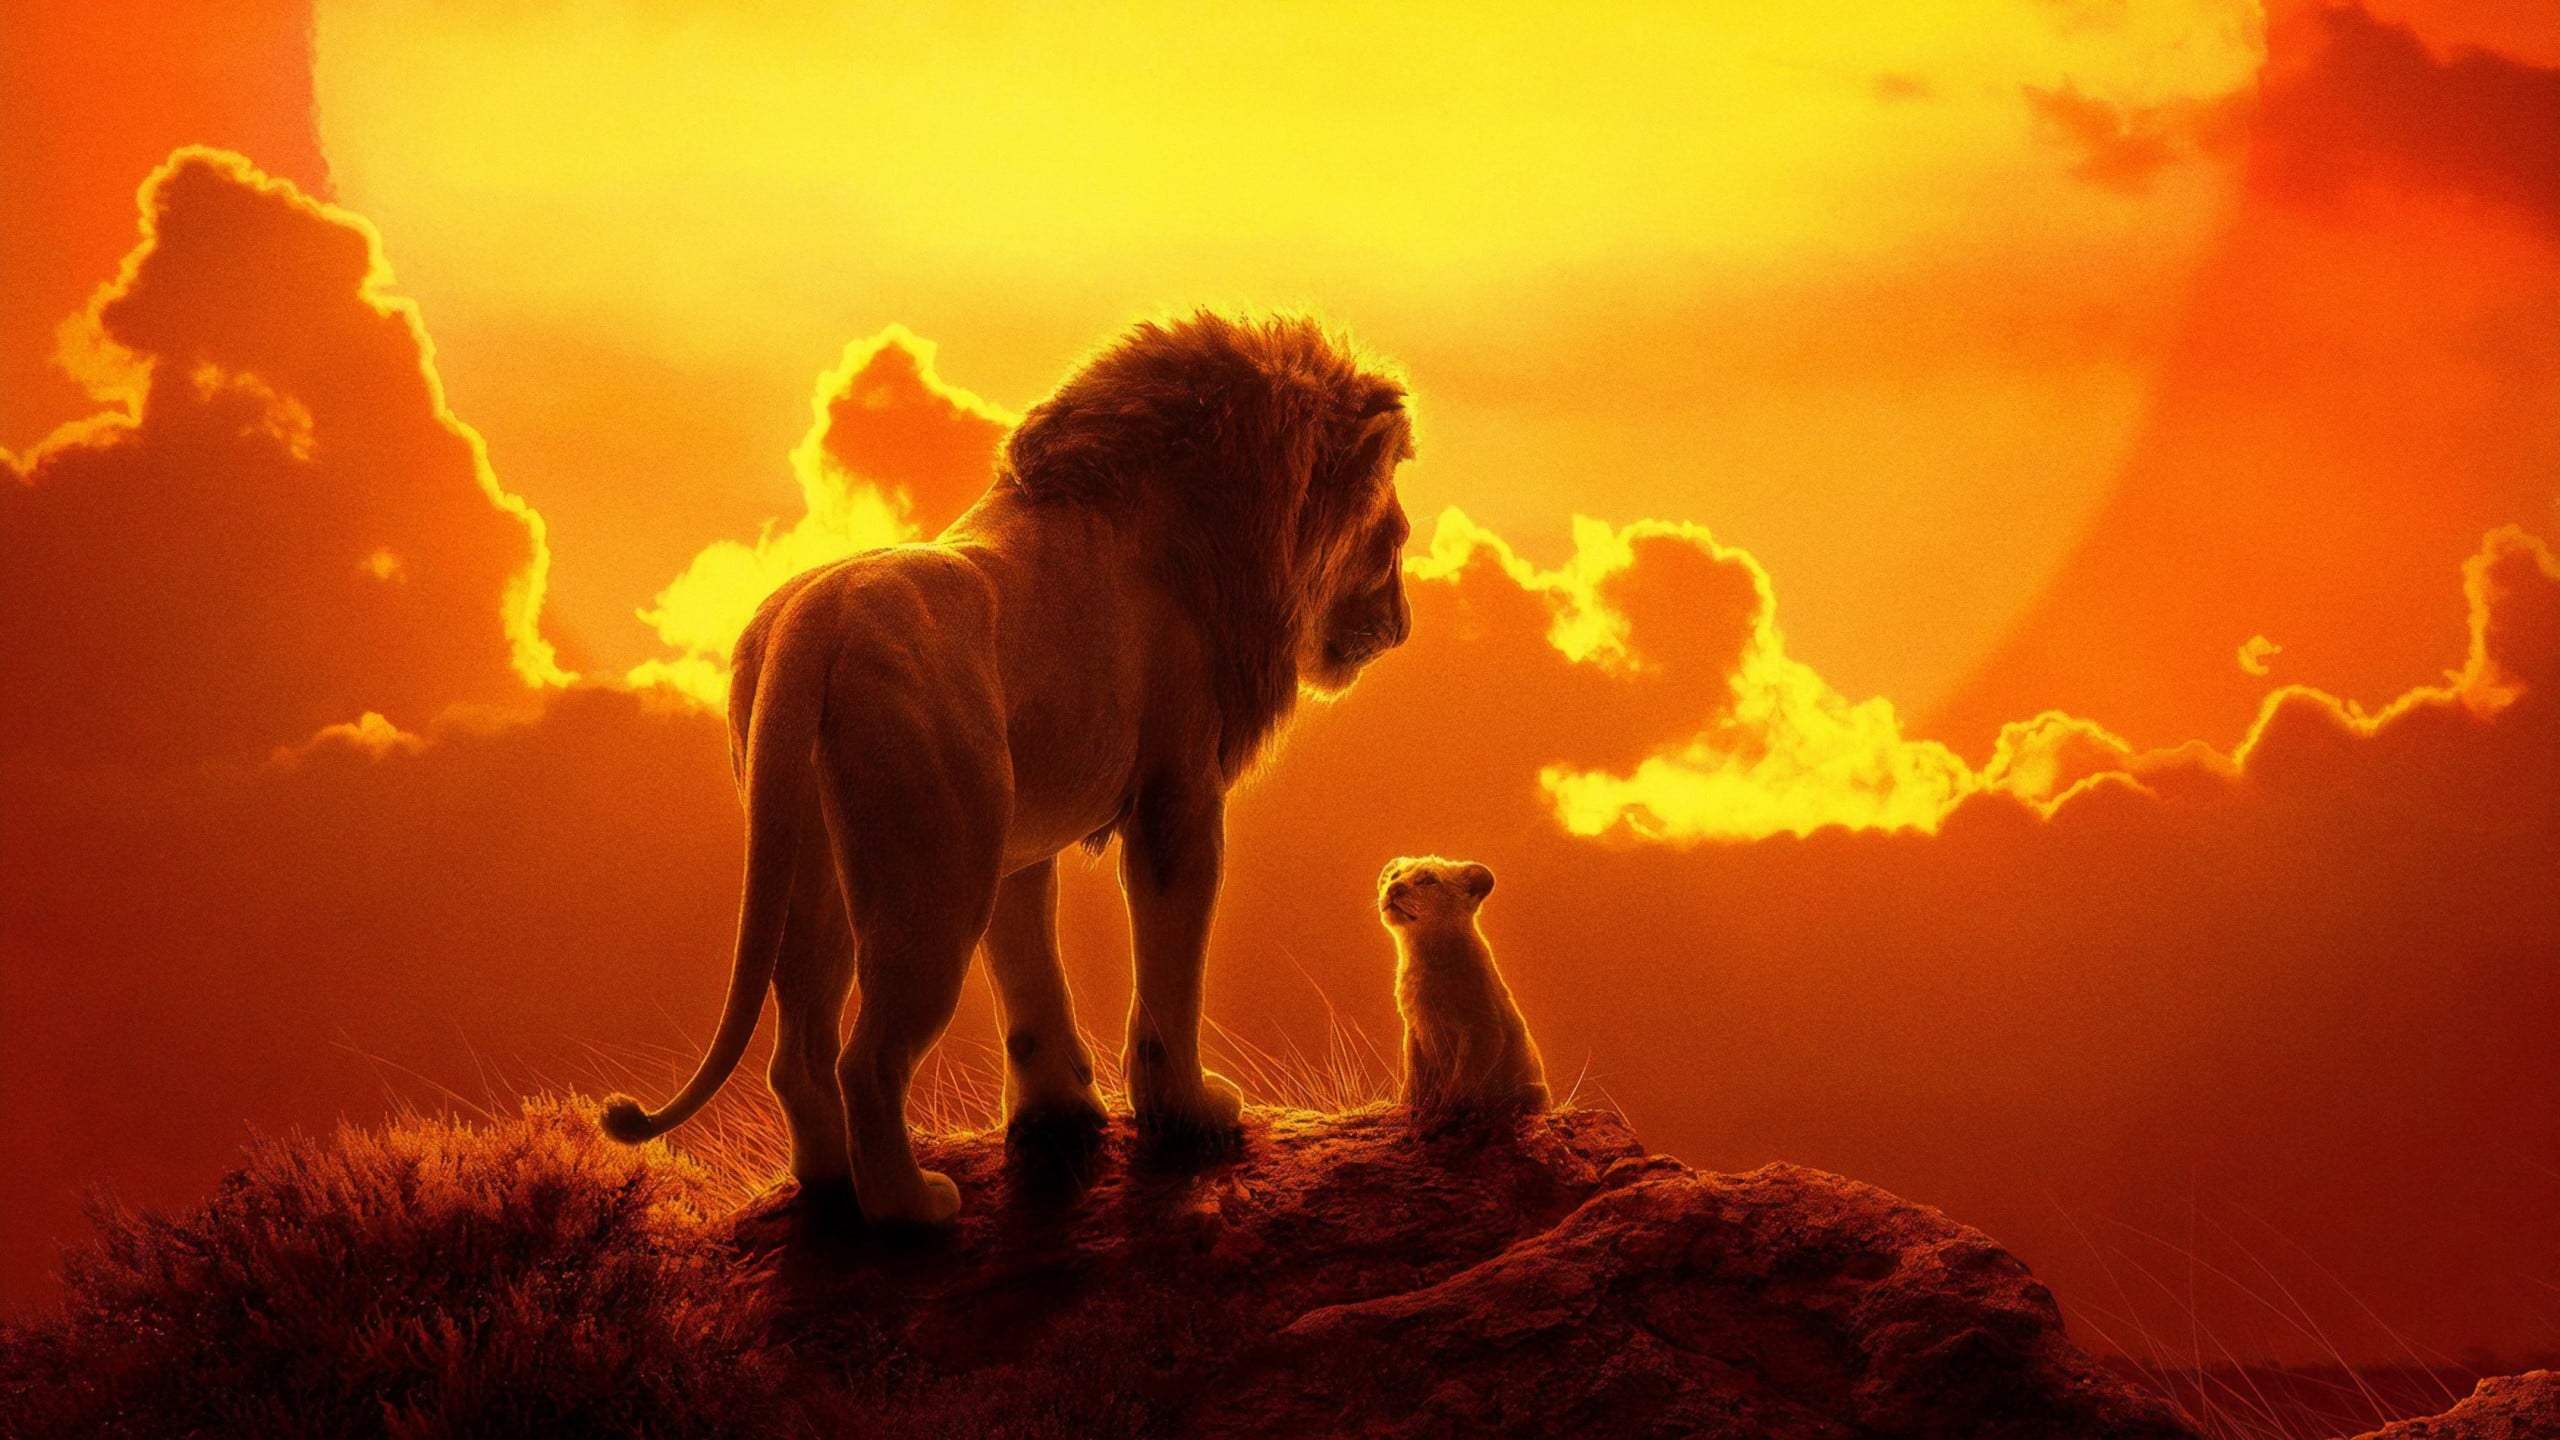 Le Roi Lion : doubler Simba a été douloureux pour Rayane Bensetti